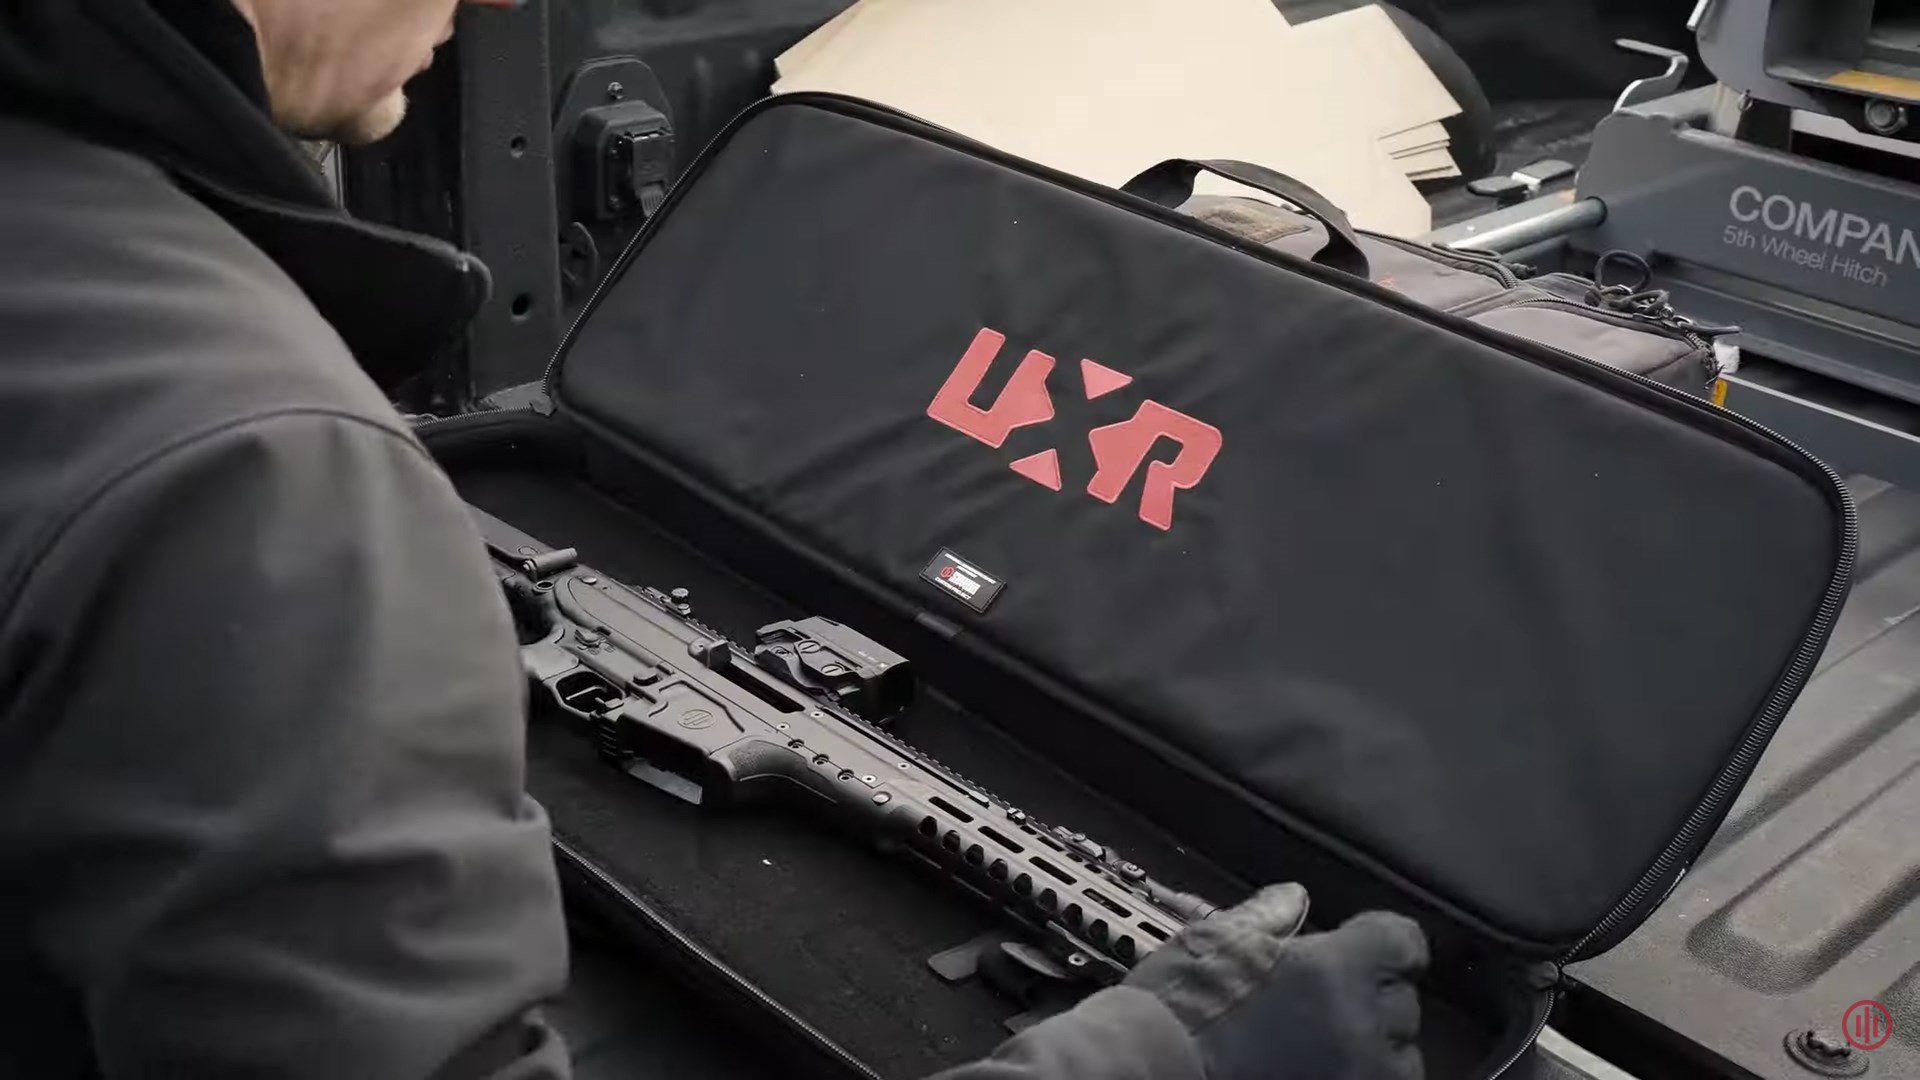 PWS UXR black case red lettering rifle truck bed man over-shoulder